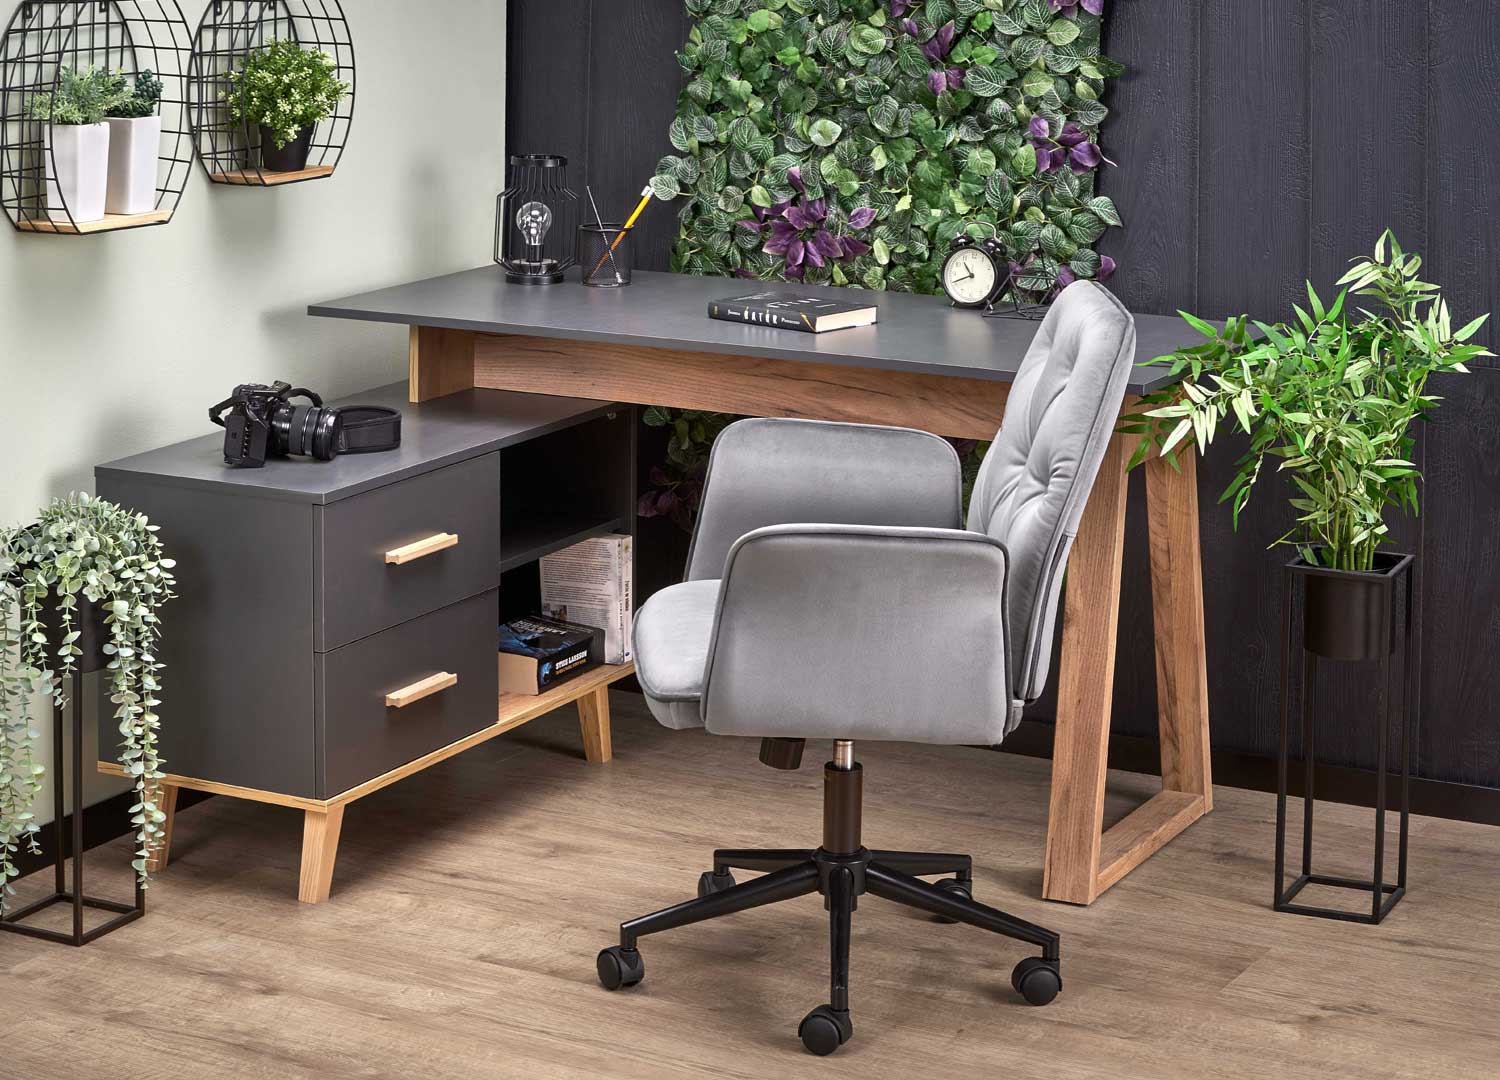 Bureau moderne avec rangement gris et bois pour bureau